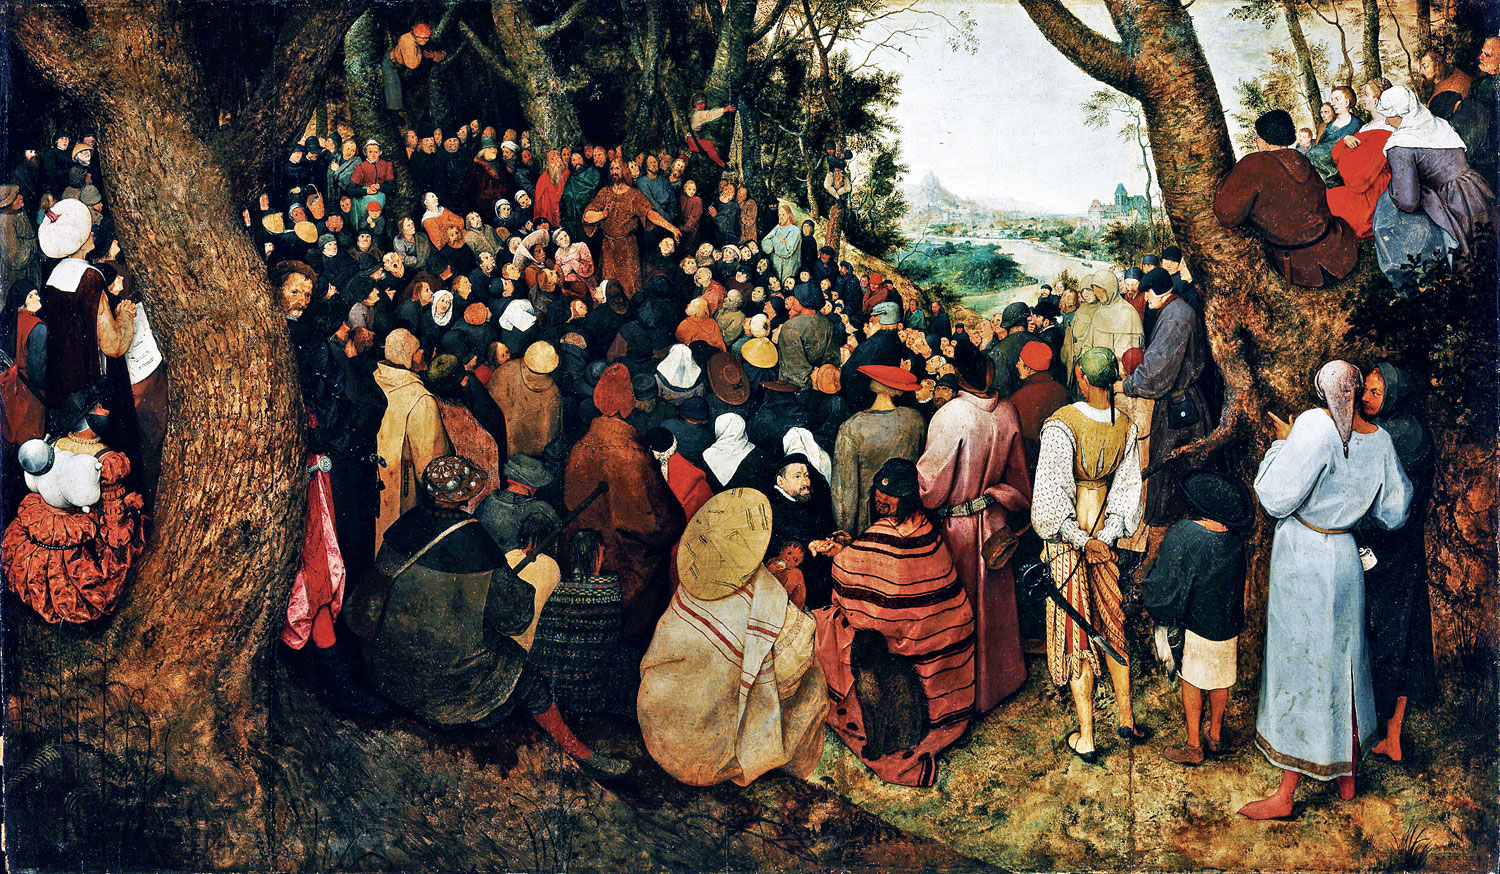 Idősebb Pieter Bruegel Keresztelő Szent János prédikációja című képe jelenleg nem látható a Szépművészeti Múzeum felújítása miatt. A közönség legközelebb június végén találkozhat vele, amikor megnyílik a Szépművészeti válogatott kincseiből rendezett 